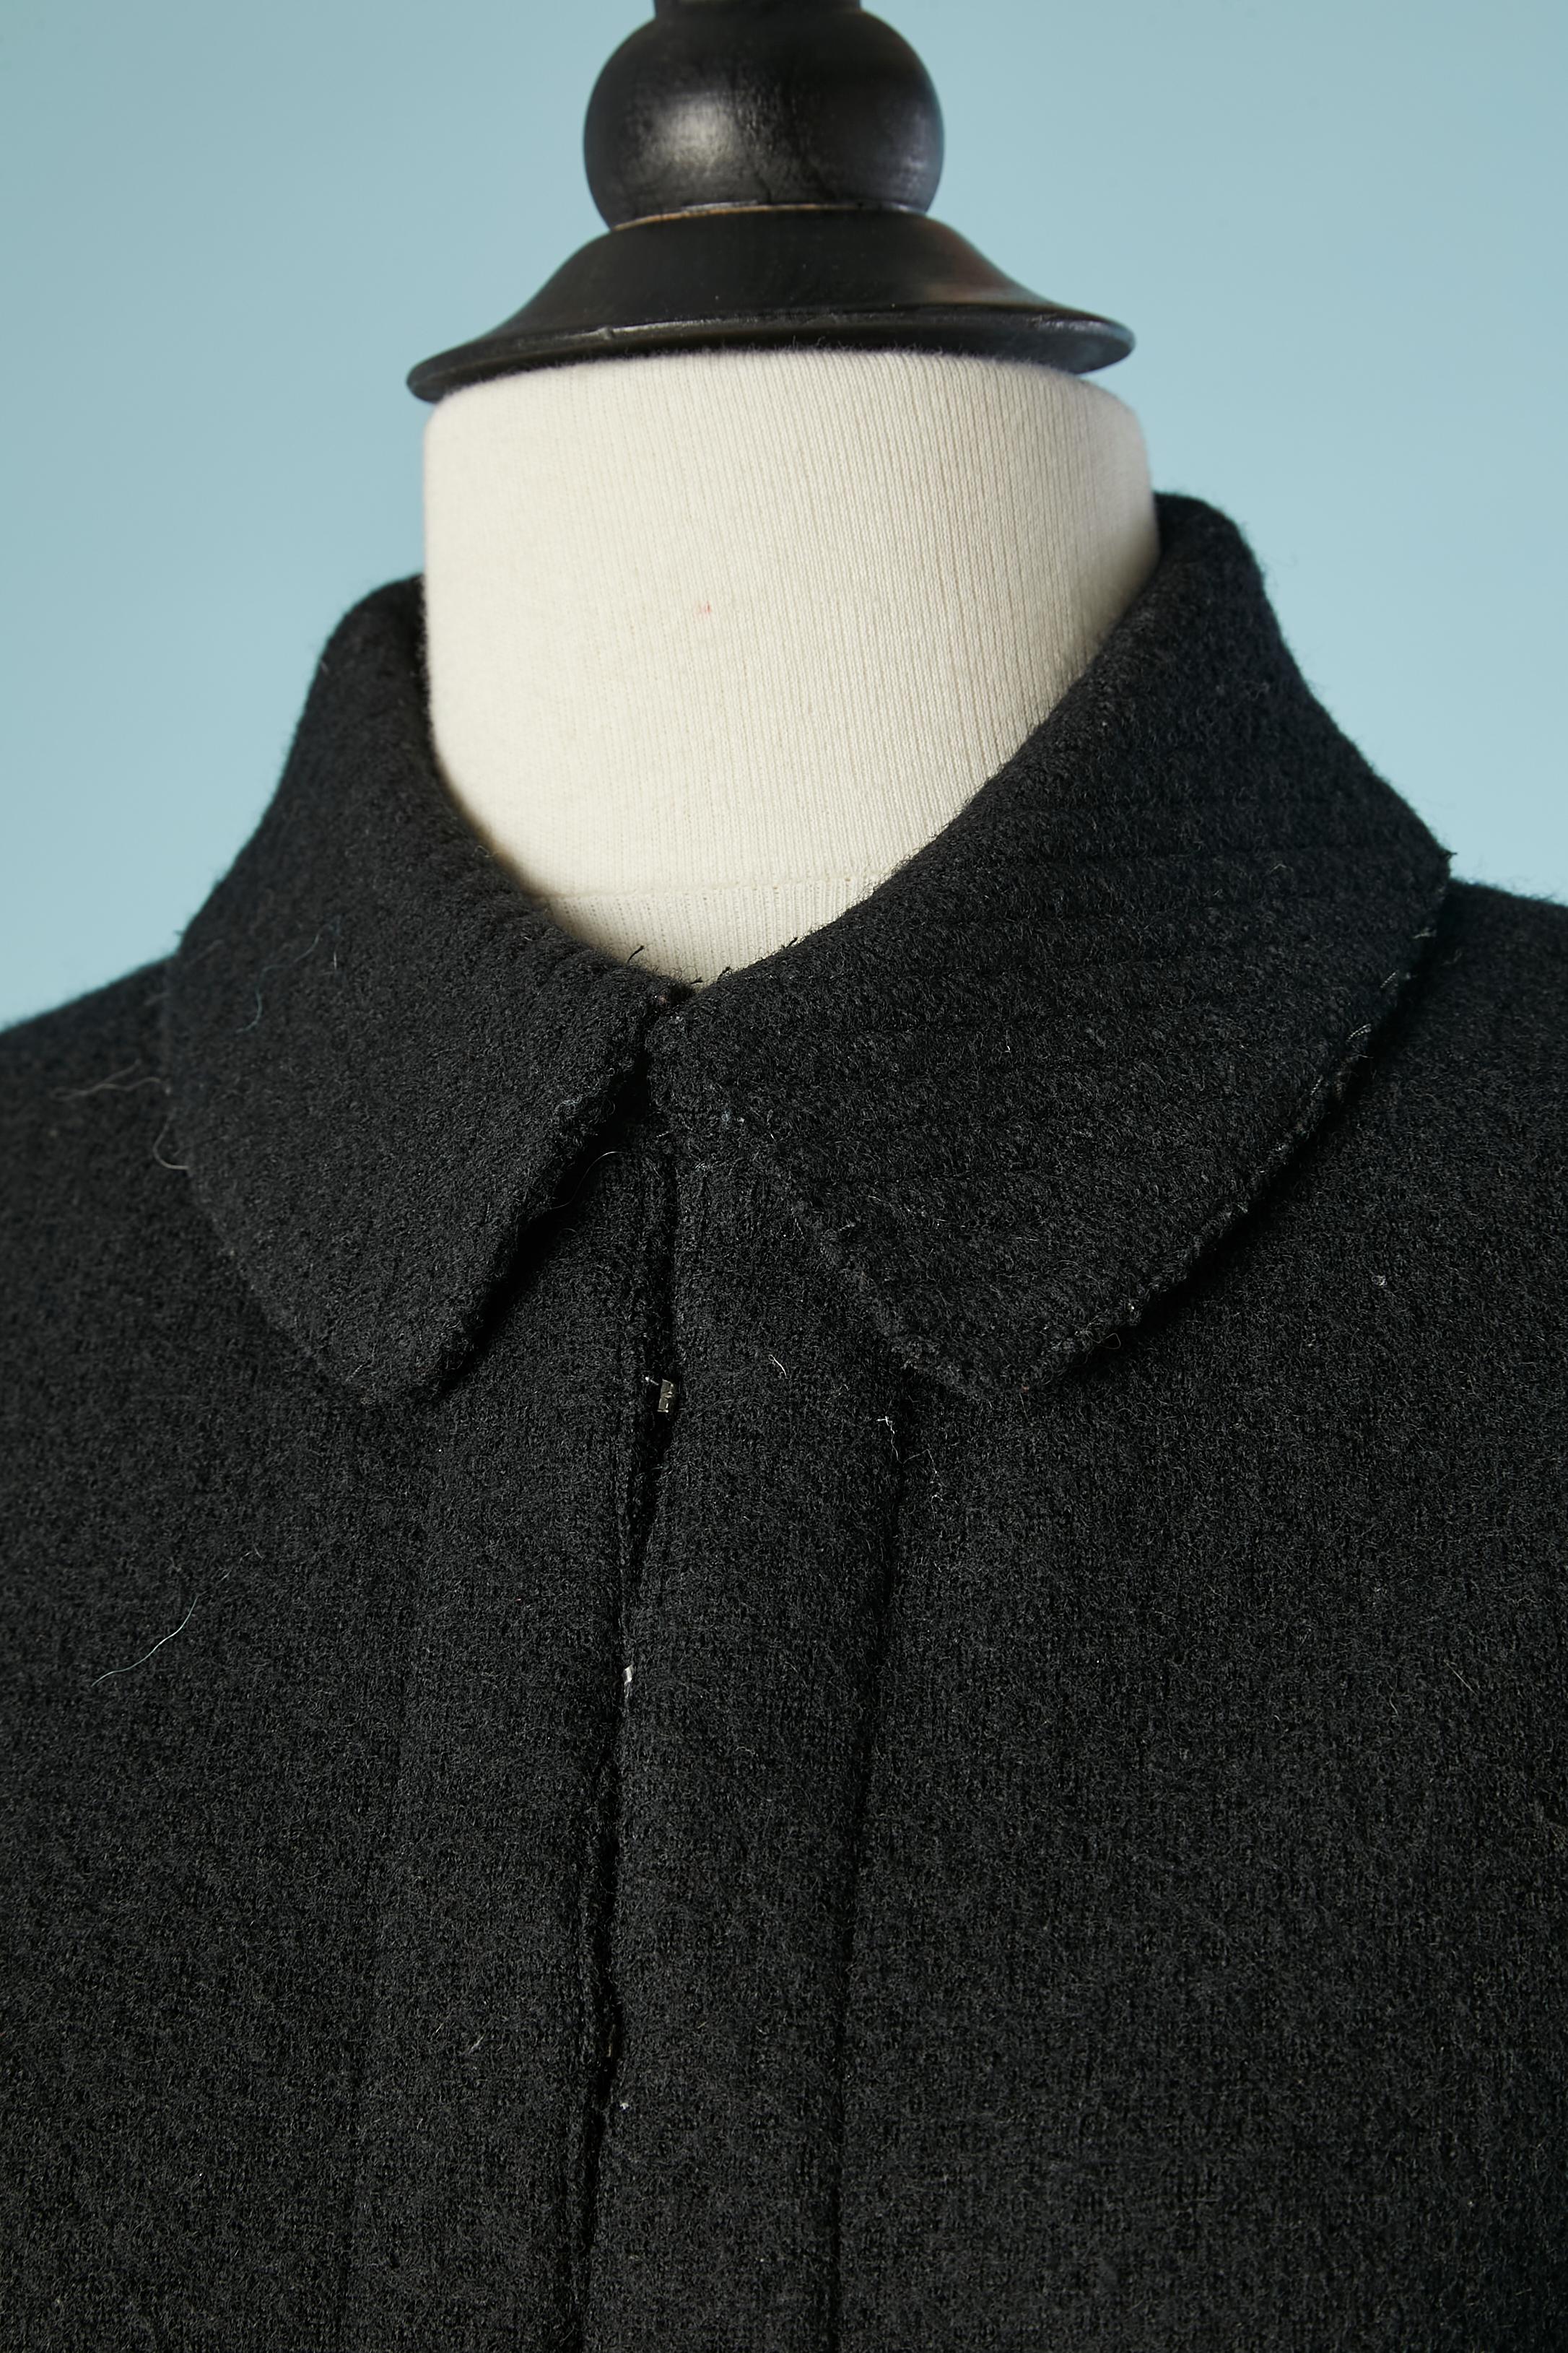 Combinaison-jupe en tricot de laine noire avec veste bord à bord, col et rabat de poche surpiqués. 
TAILLE 38 (M) 